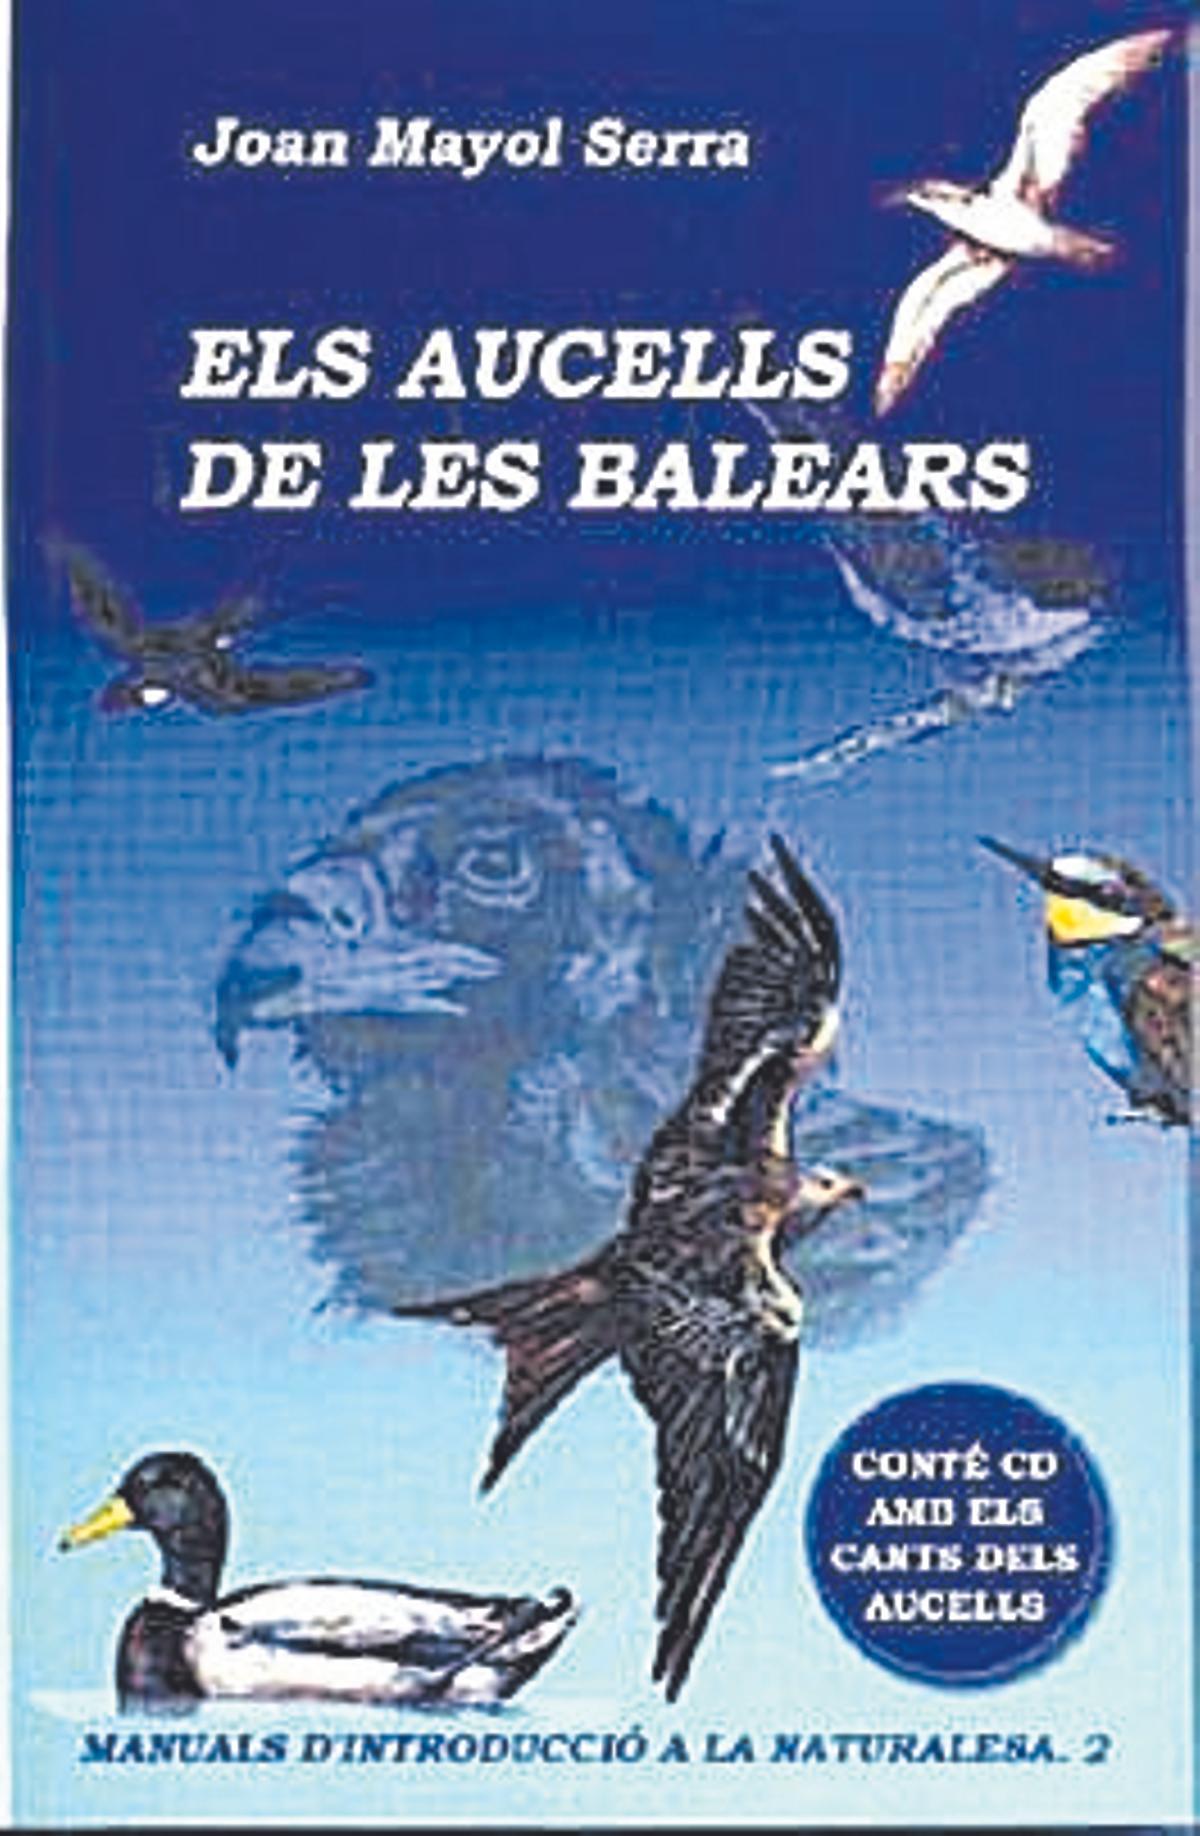 Portada del llibre 'Els aucells de les Balears', de Joan Mayol Serra. Nova Editorial Moll, 5ena edició, revisada i ampliada  271 pàgines, 22 €.